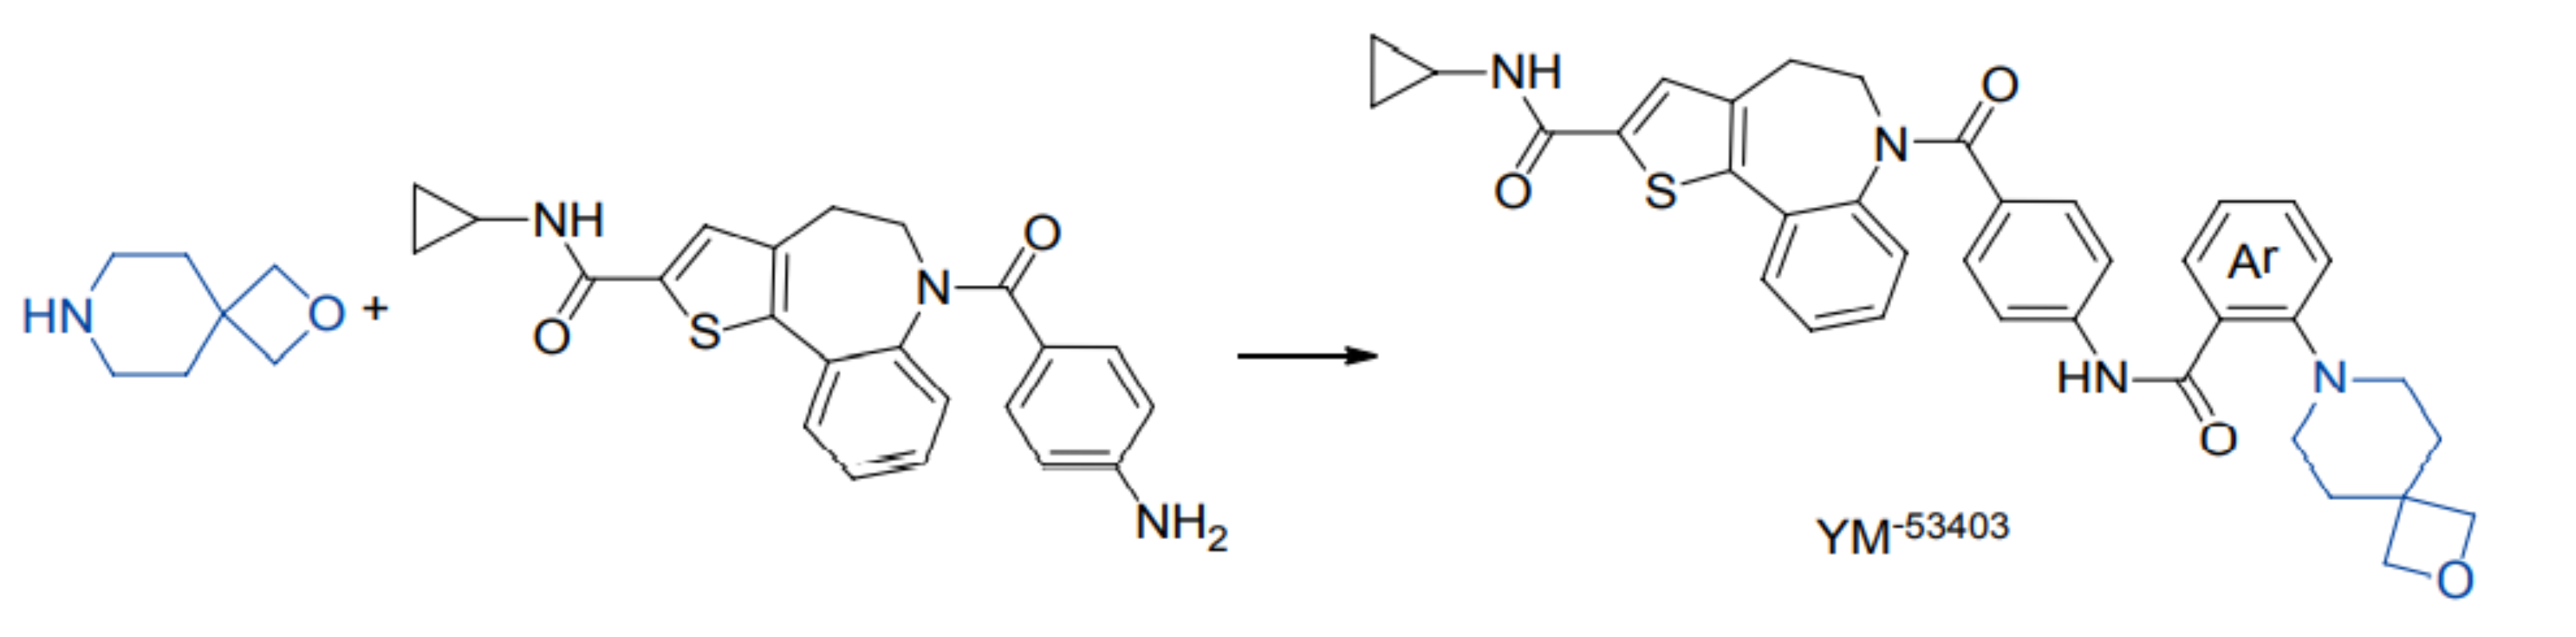 [6+4]螺环化合物用于修饰衍生，提高YM-53403的抗病毒活性